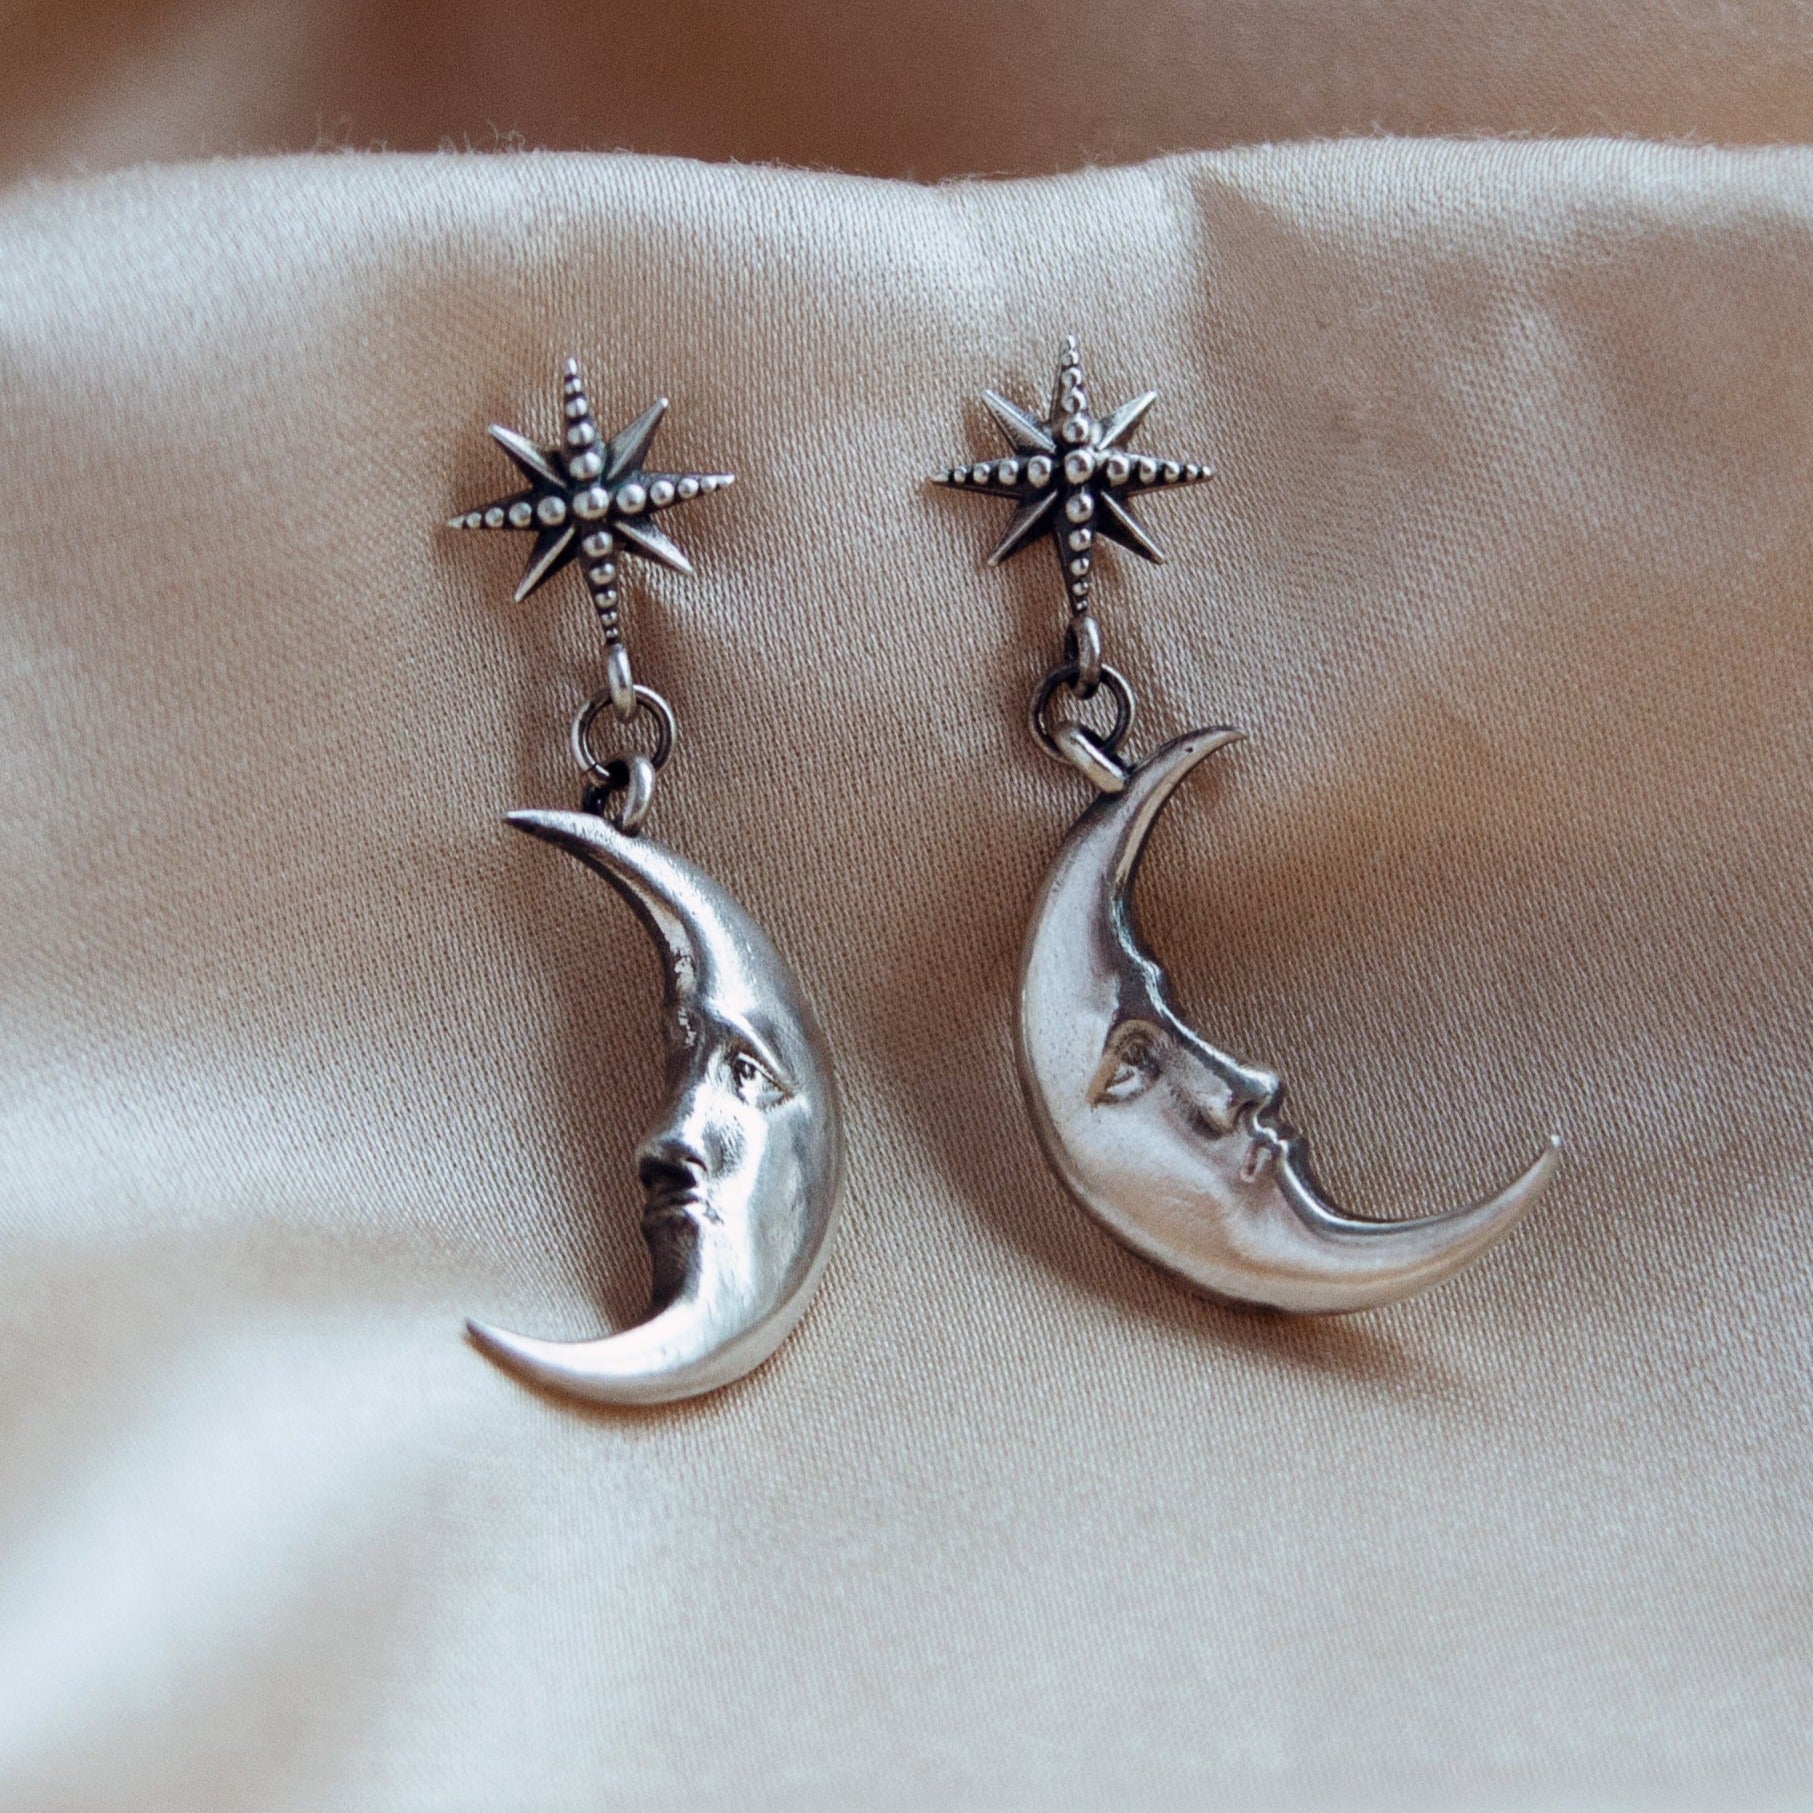 Dreamweaver Earrings in sterling silver